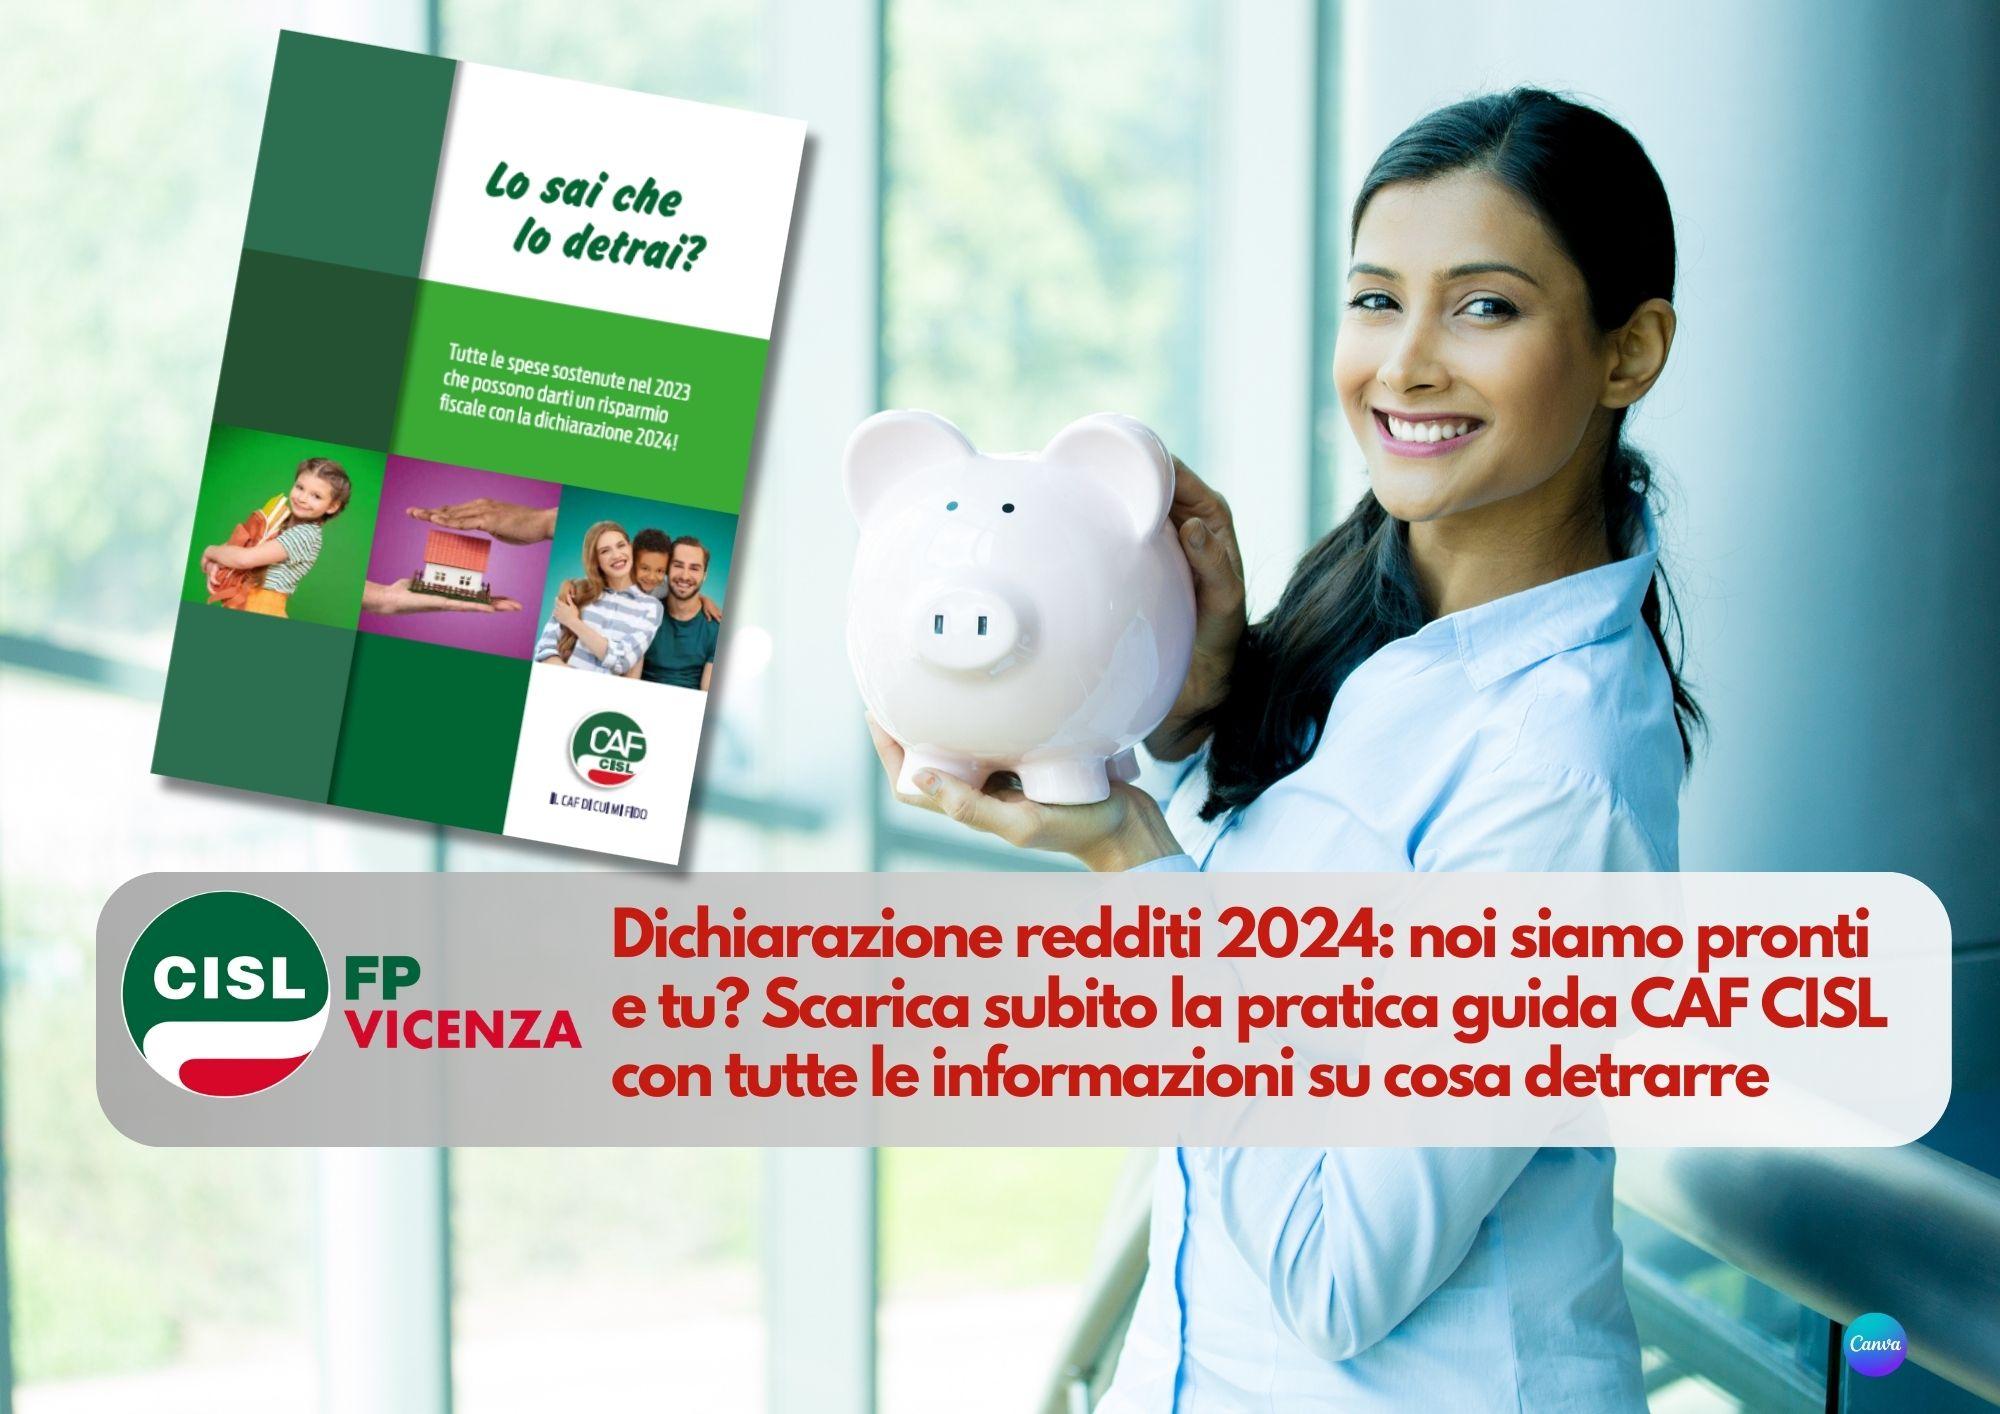 CISL FP Vicenza. Dichiarazione redditi 2024: noi siamo pronti e tu? Scarica la pratica guida CAF CISL